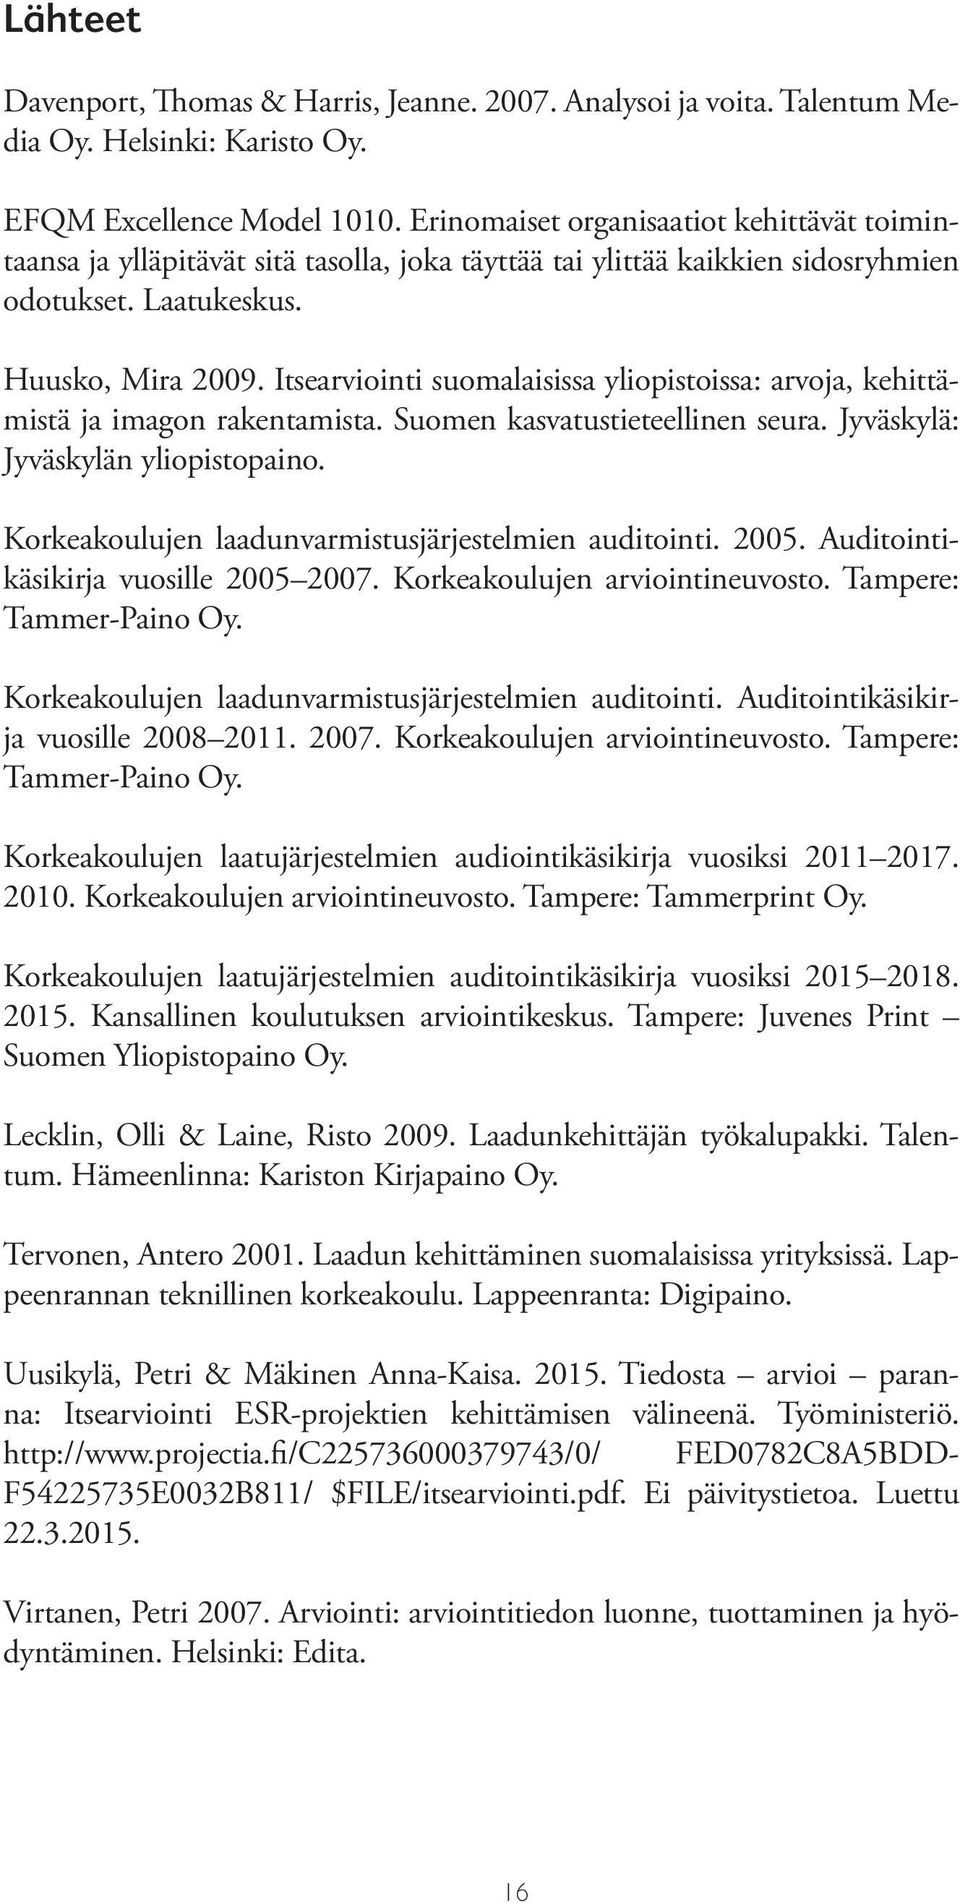 Itsearviointi suomalaisissa yliopistoissa: arvoja, kehittämistä ja imagon rakentamista. Suomen kasvatustieteellinen seura. Jyväskylä: Jyväskylän yliopistopaino.